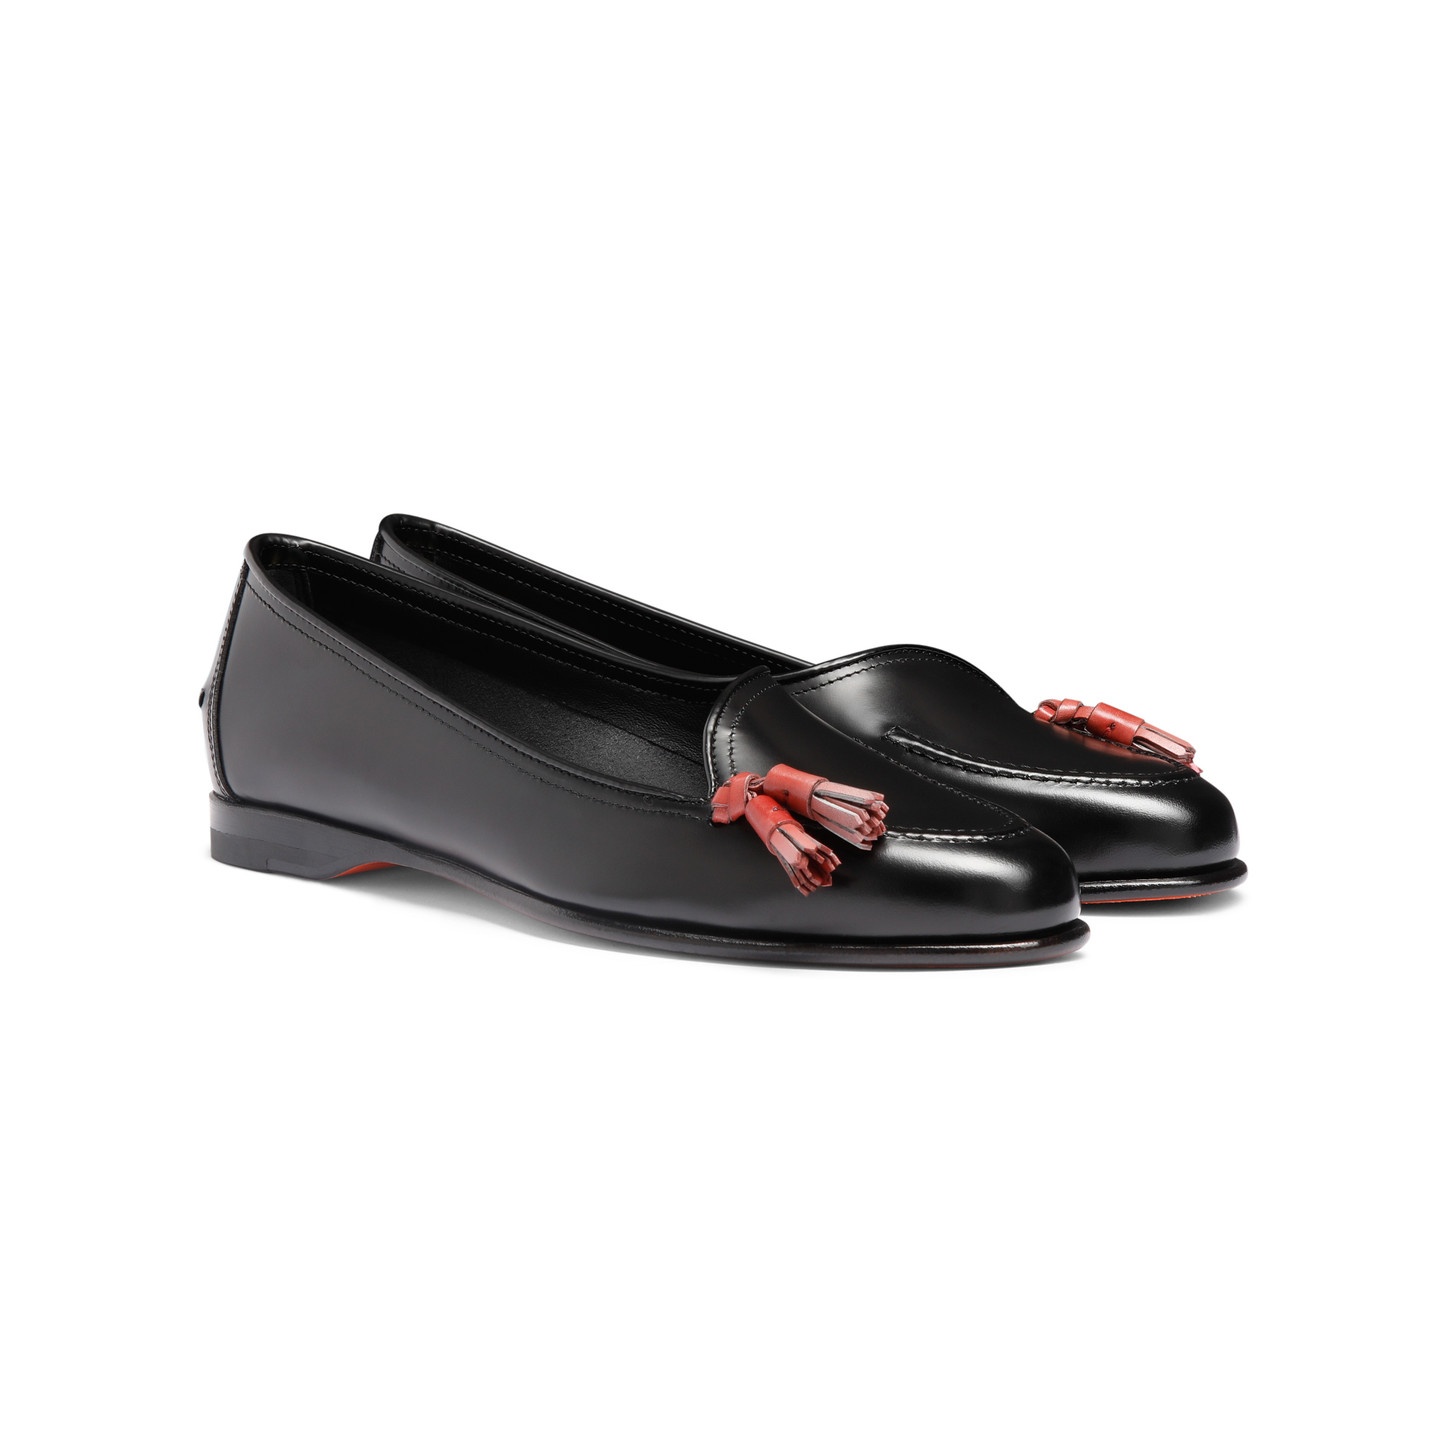 Women's black leather Andrea tassel loafer - 3